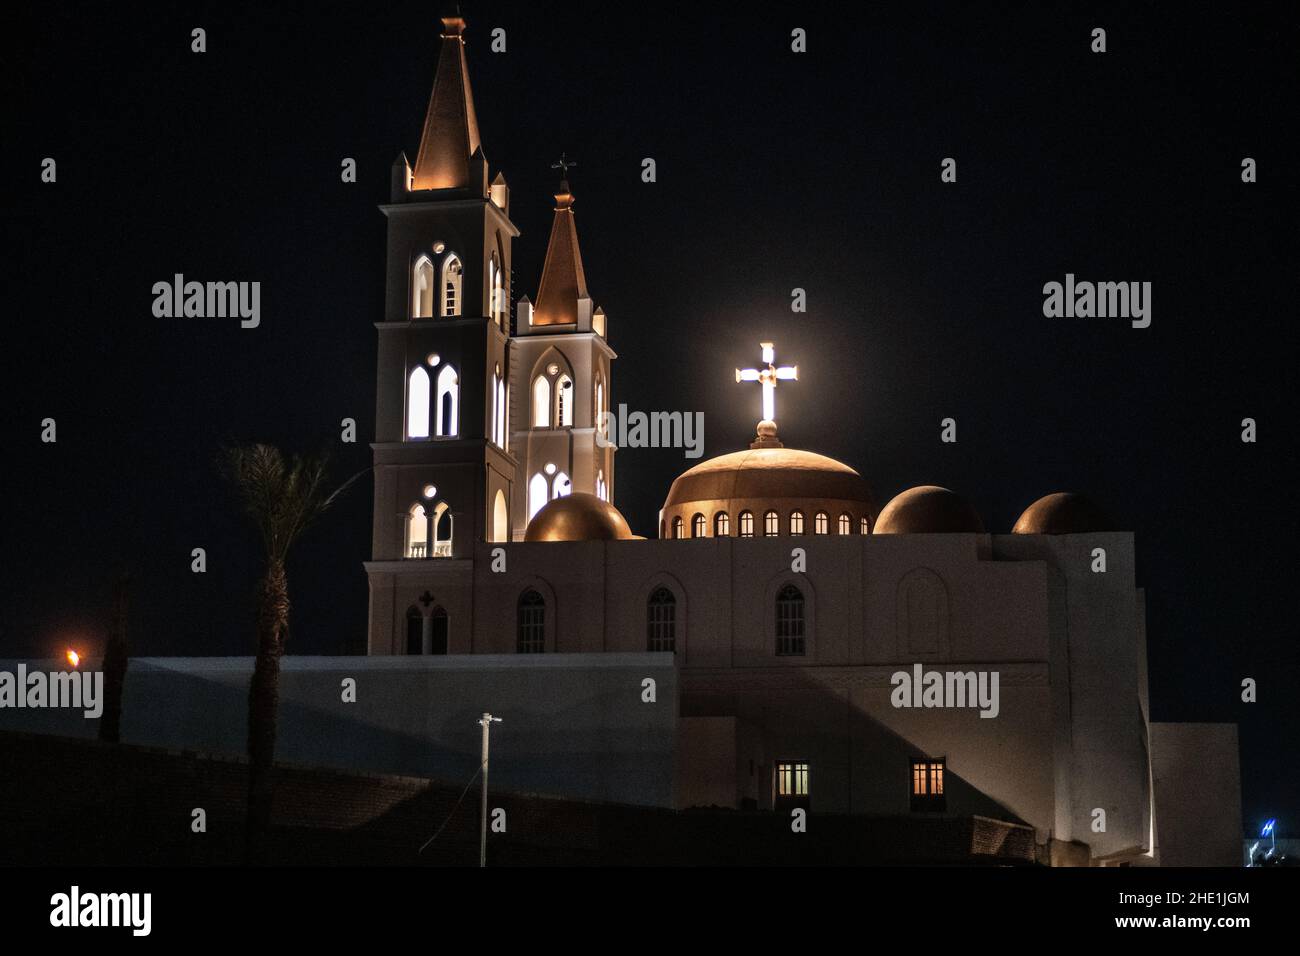 Die koptische Kirche der Heiligen Maria in Luxor, Ägypten, erleuchtete nachts. Die Kirche ist die älteste koptische Kirche der Stadt. Stockfoto